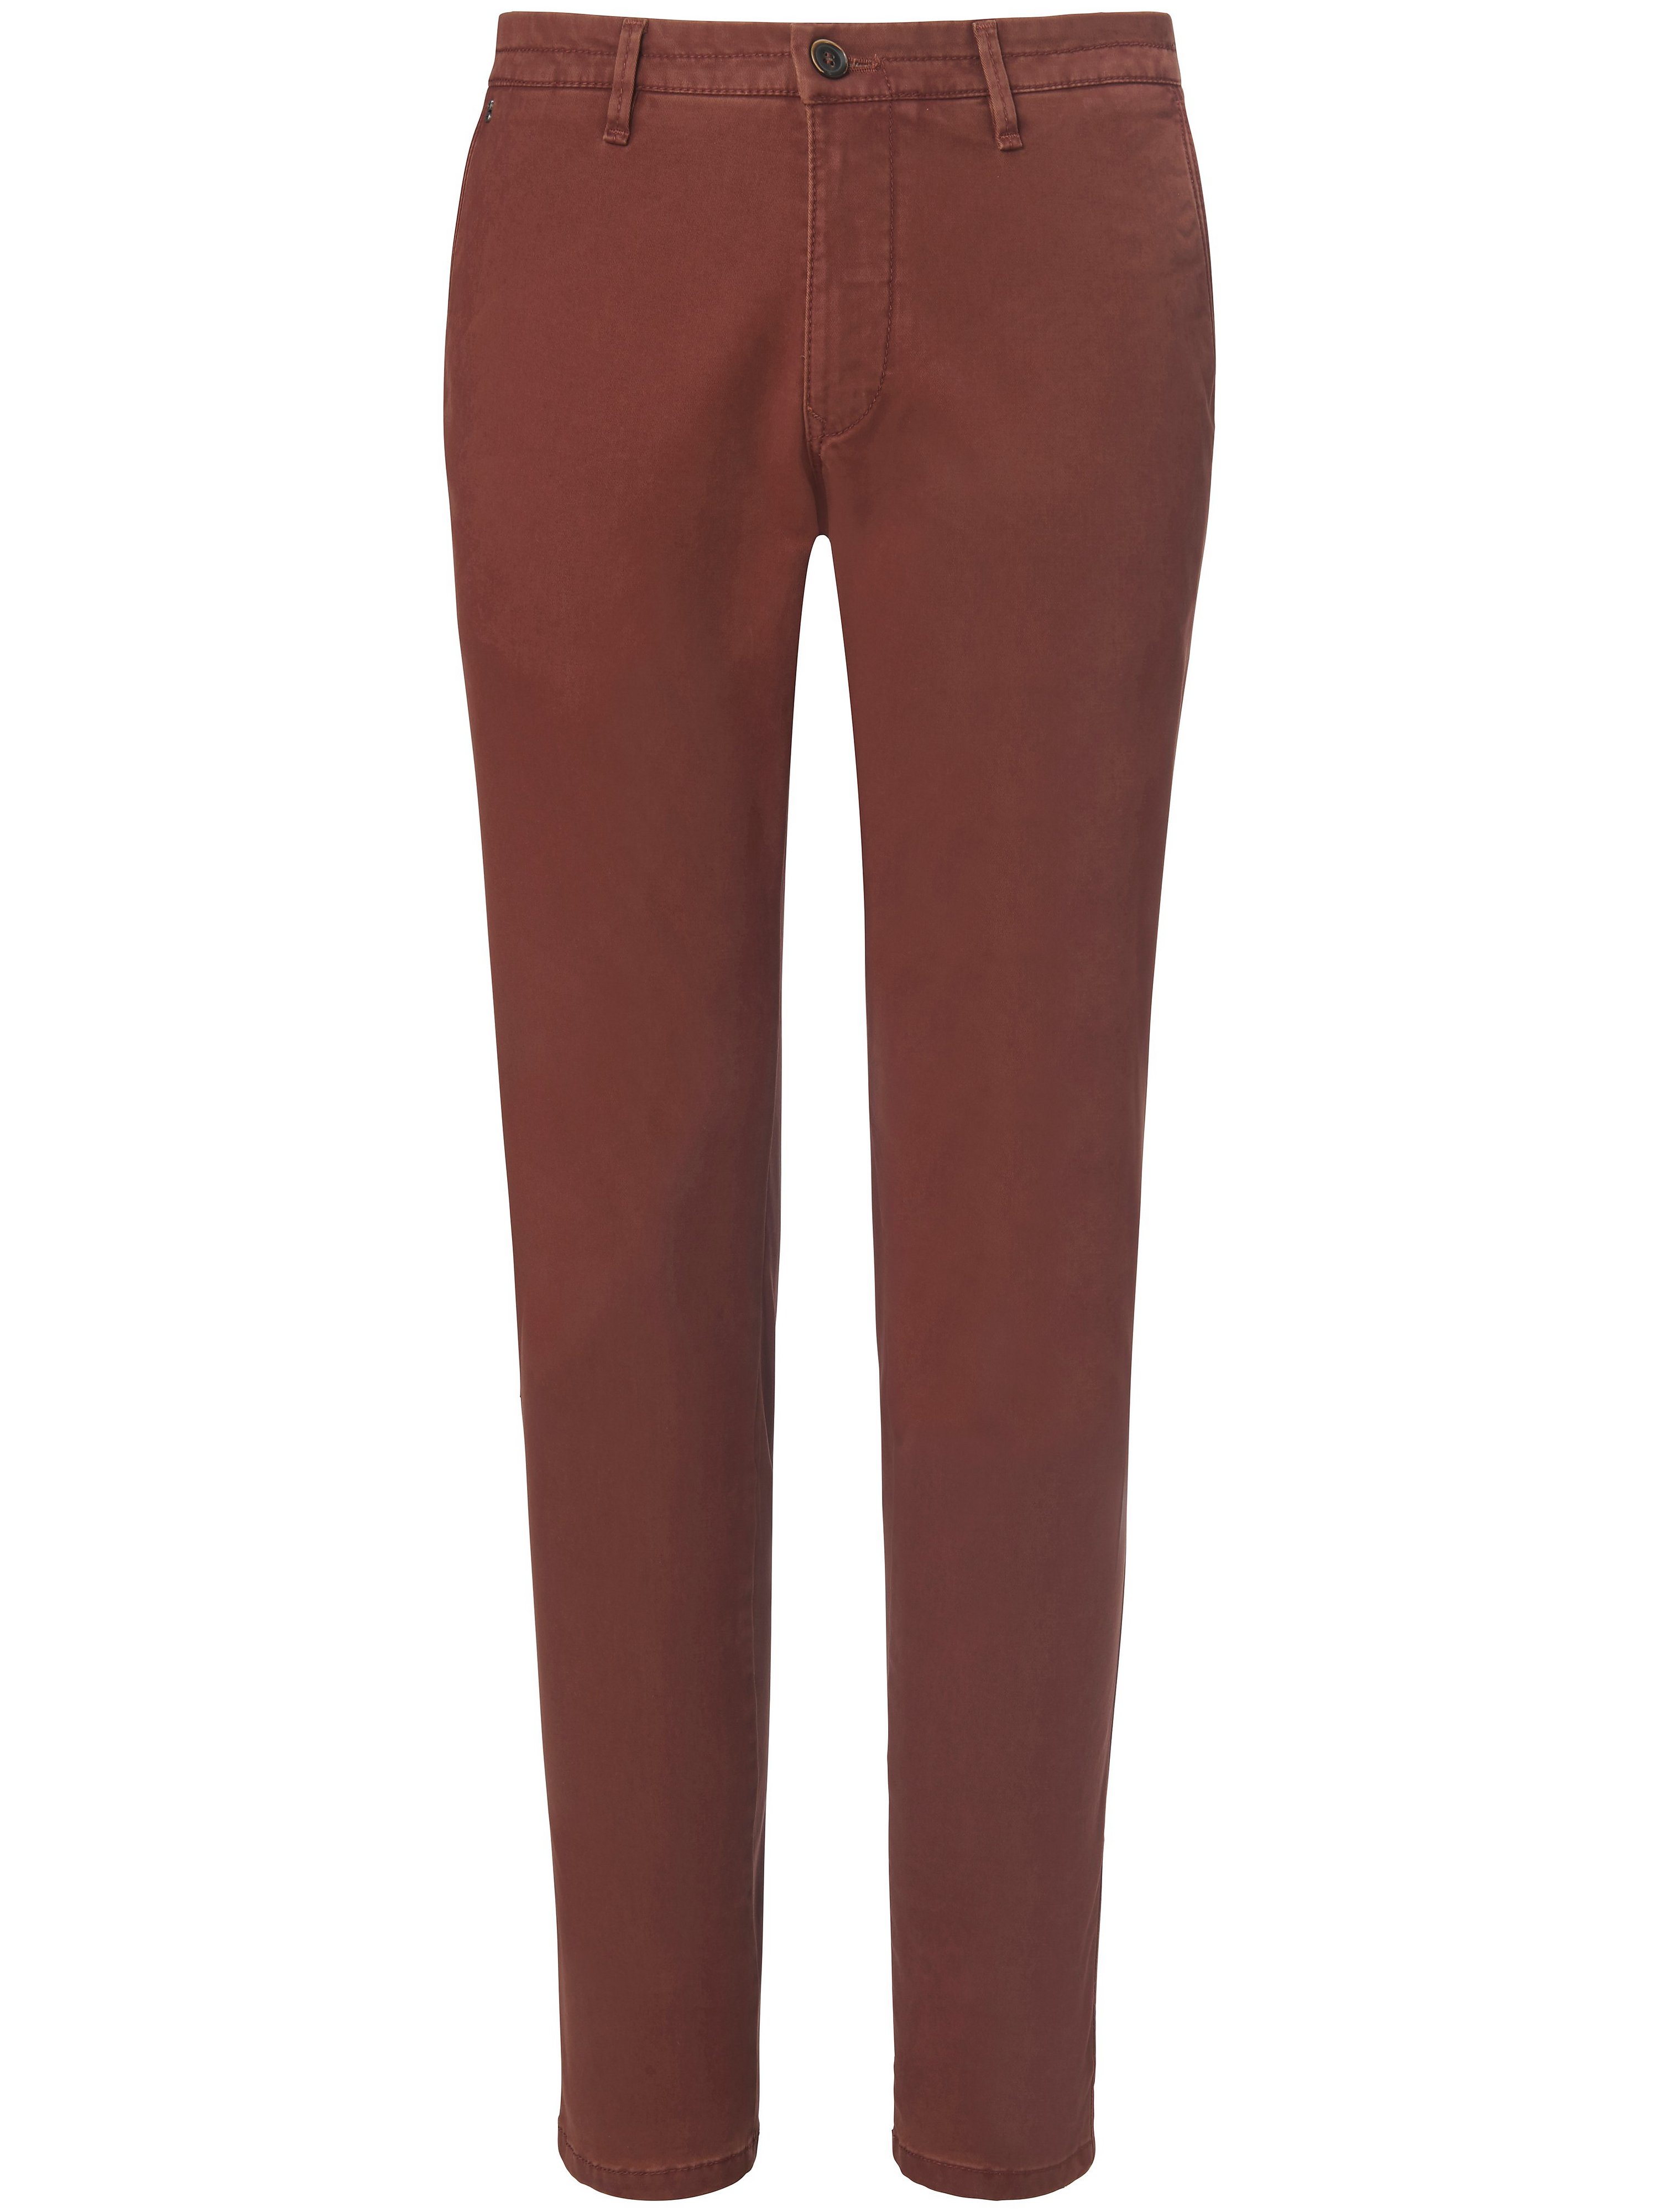 Le pantalon coupe Slim Fit modèle Sterling  gardeur marron taille 28